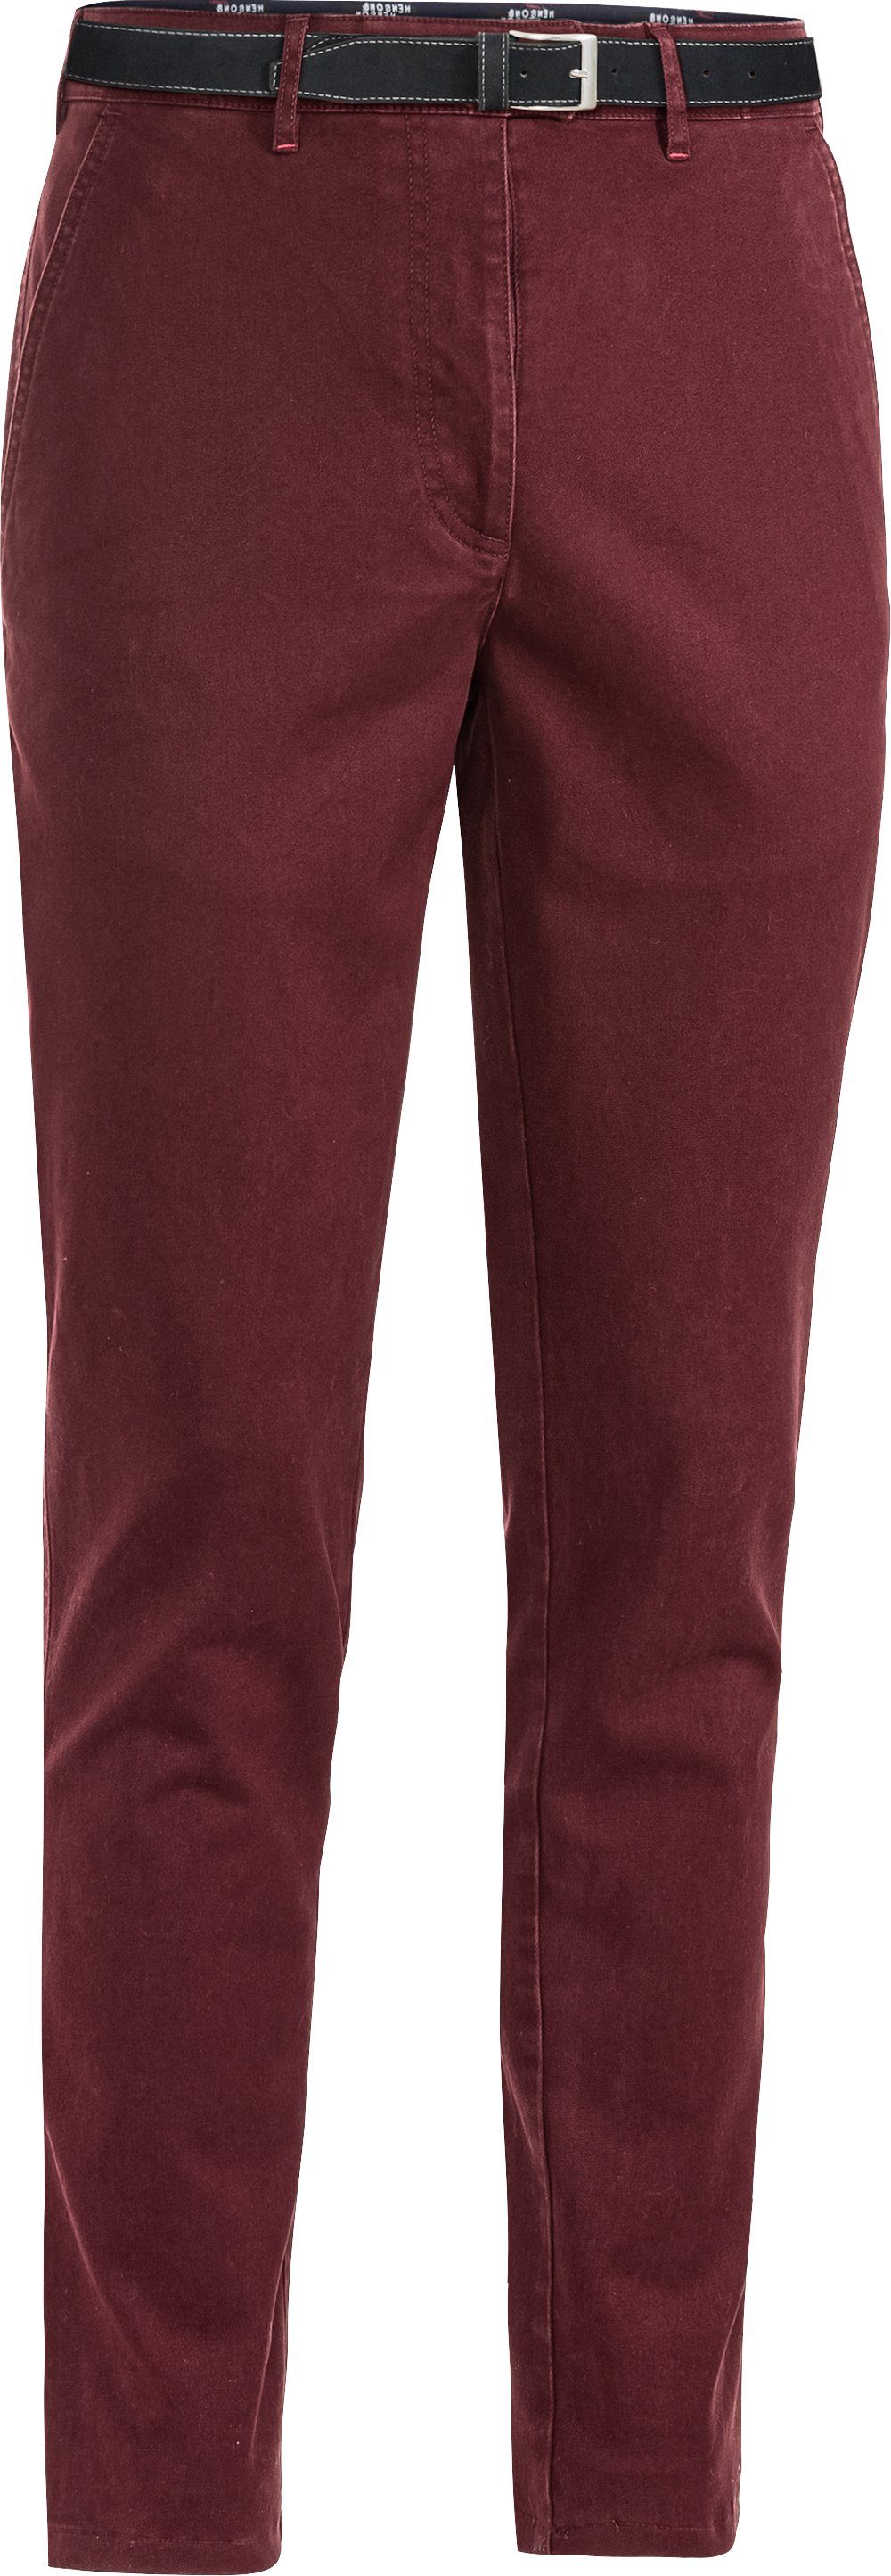 HENSON&HENSON Stretch-Hose in farbintensiver, formstabiler Twill-Qualität mit passendem Gürtel bordeaux